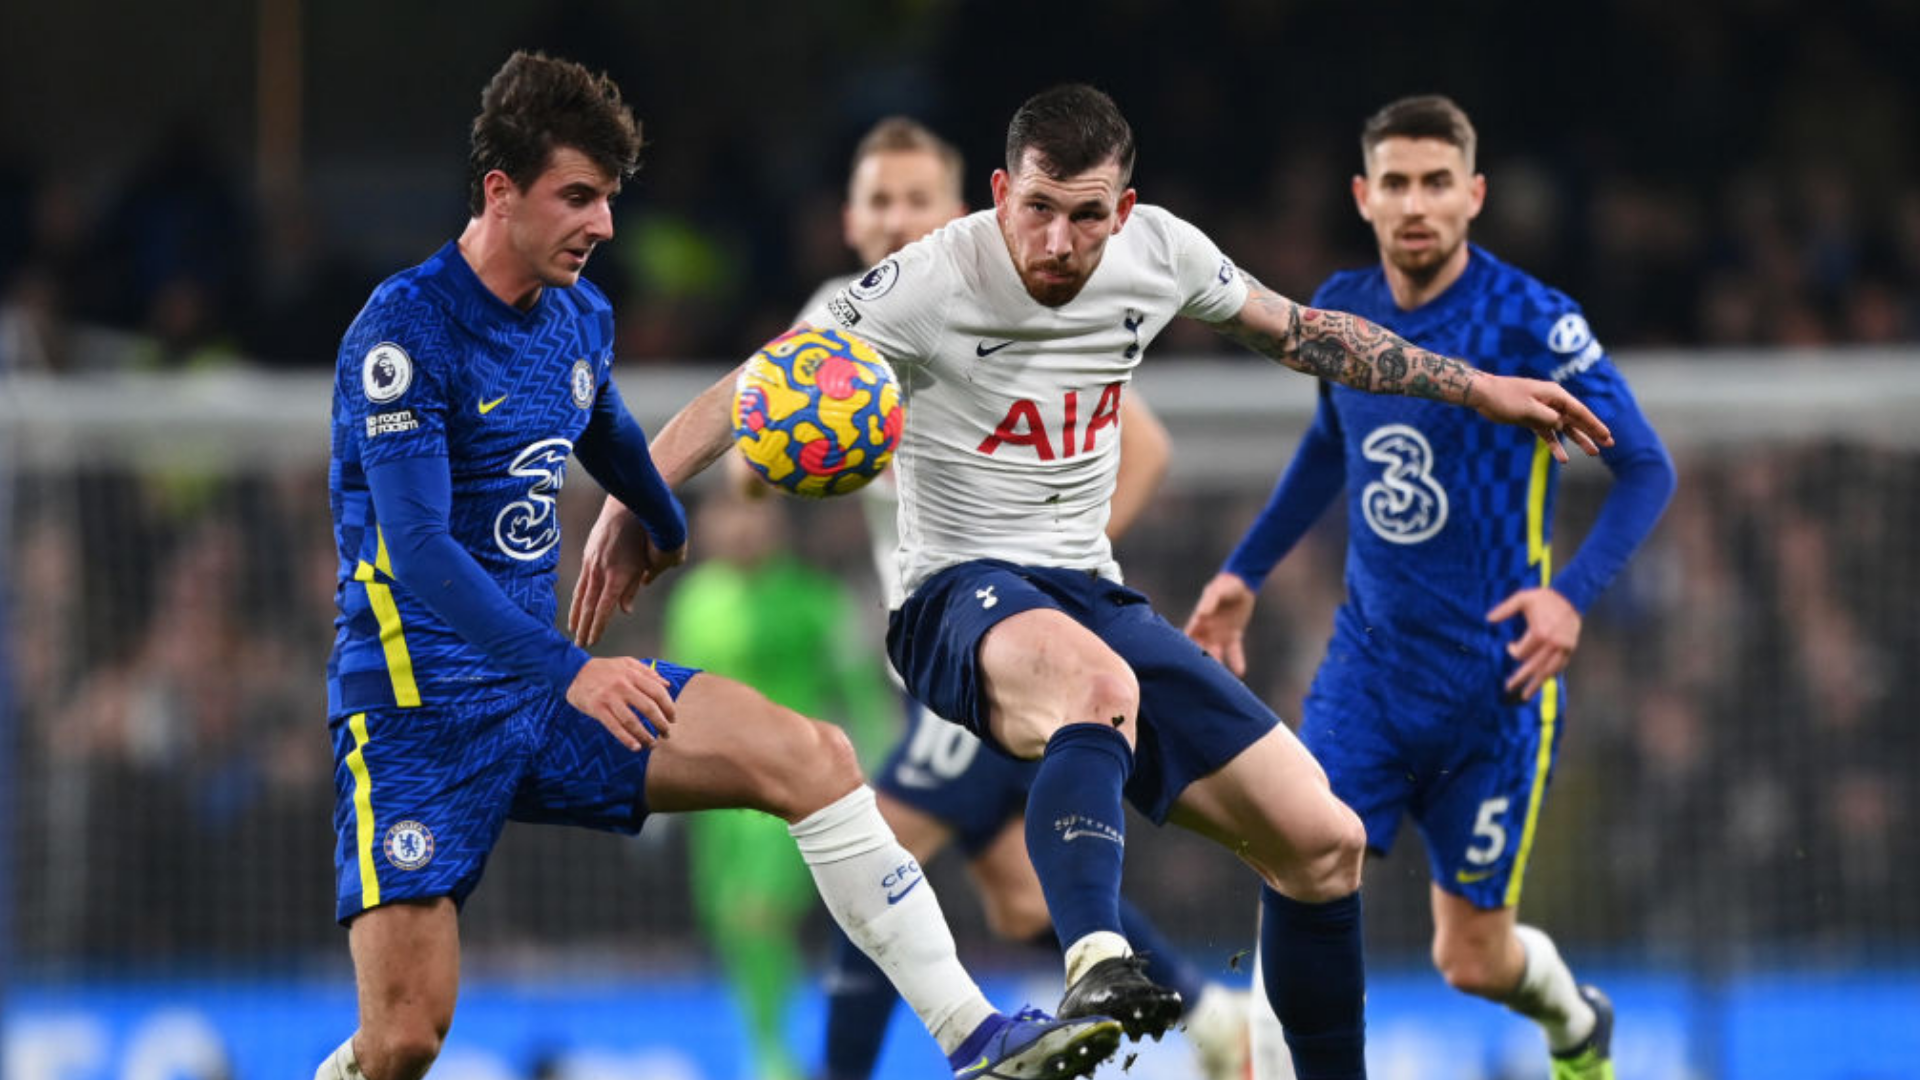 Jogadores disputam a bola no jogo entre Chelsea e Tottenham